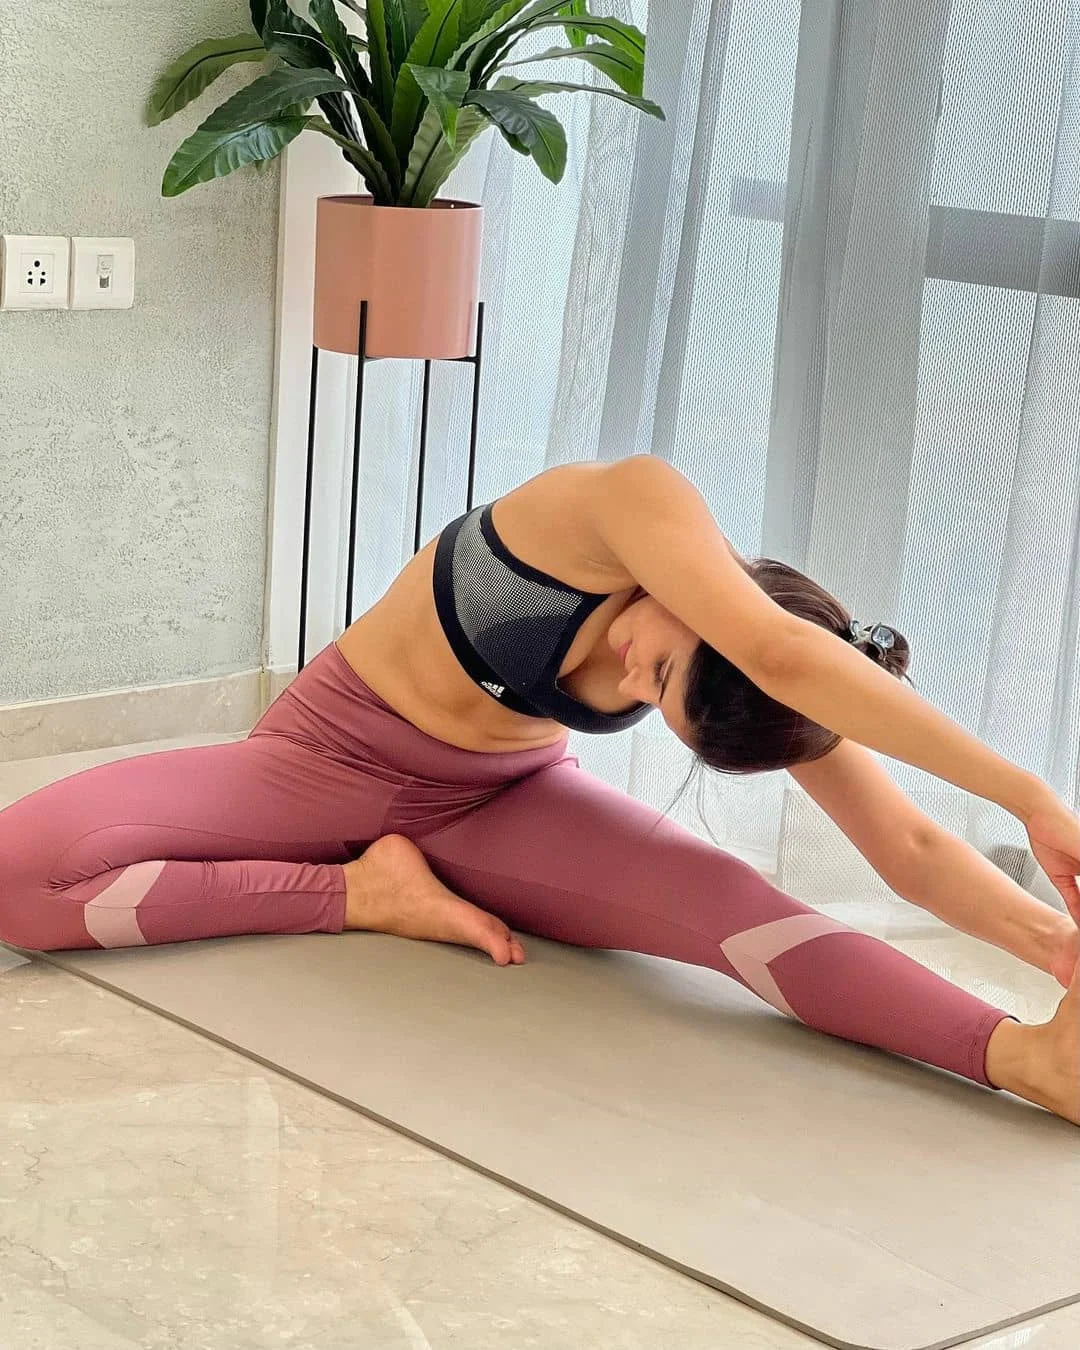 Shakshi malik doing hot and sexy Yoga